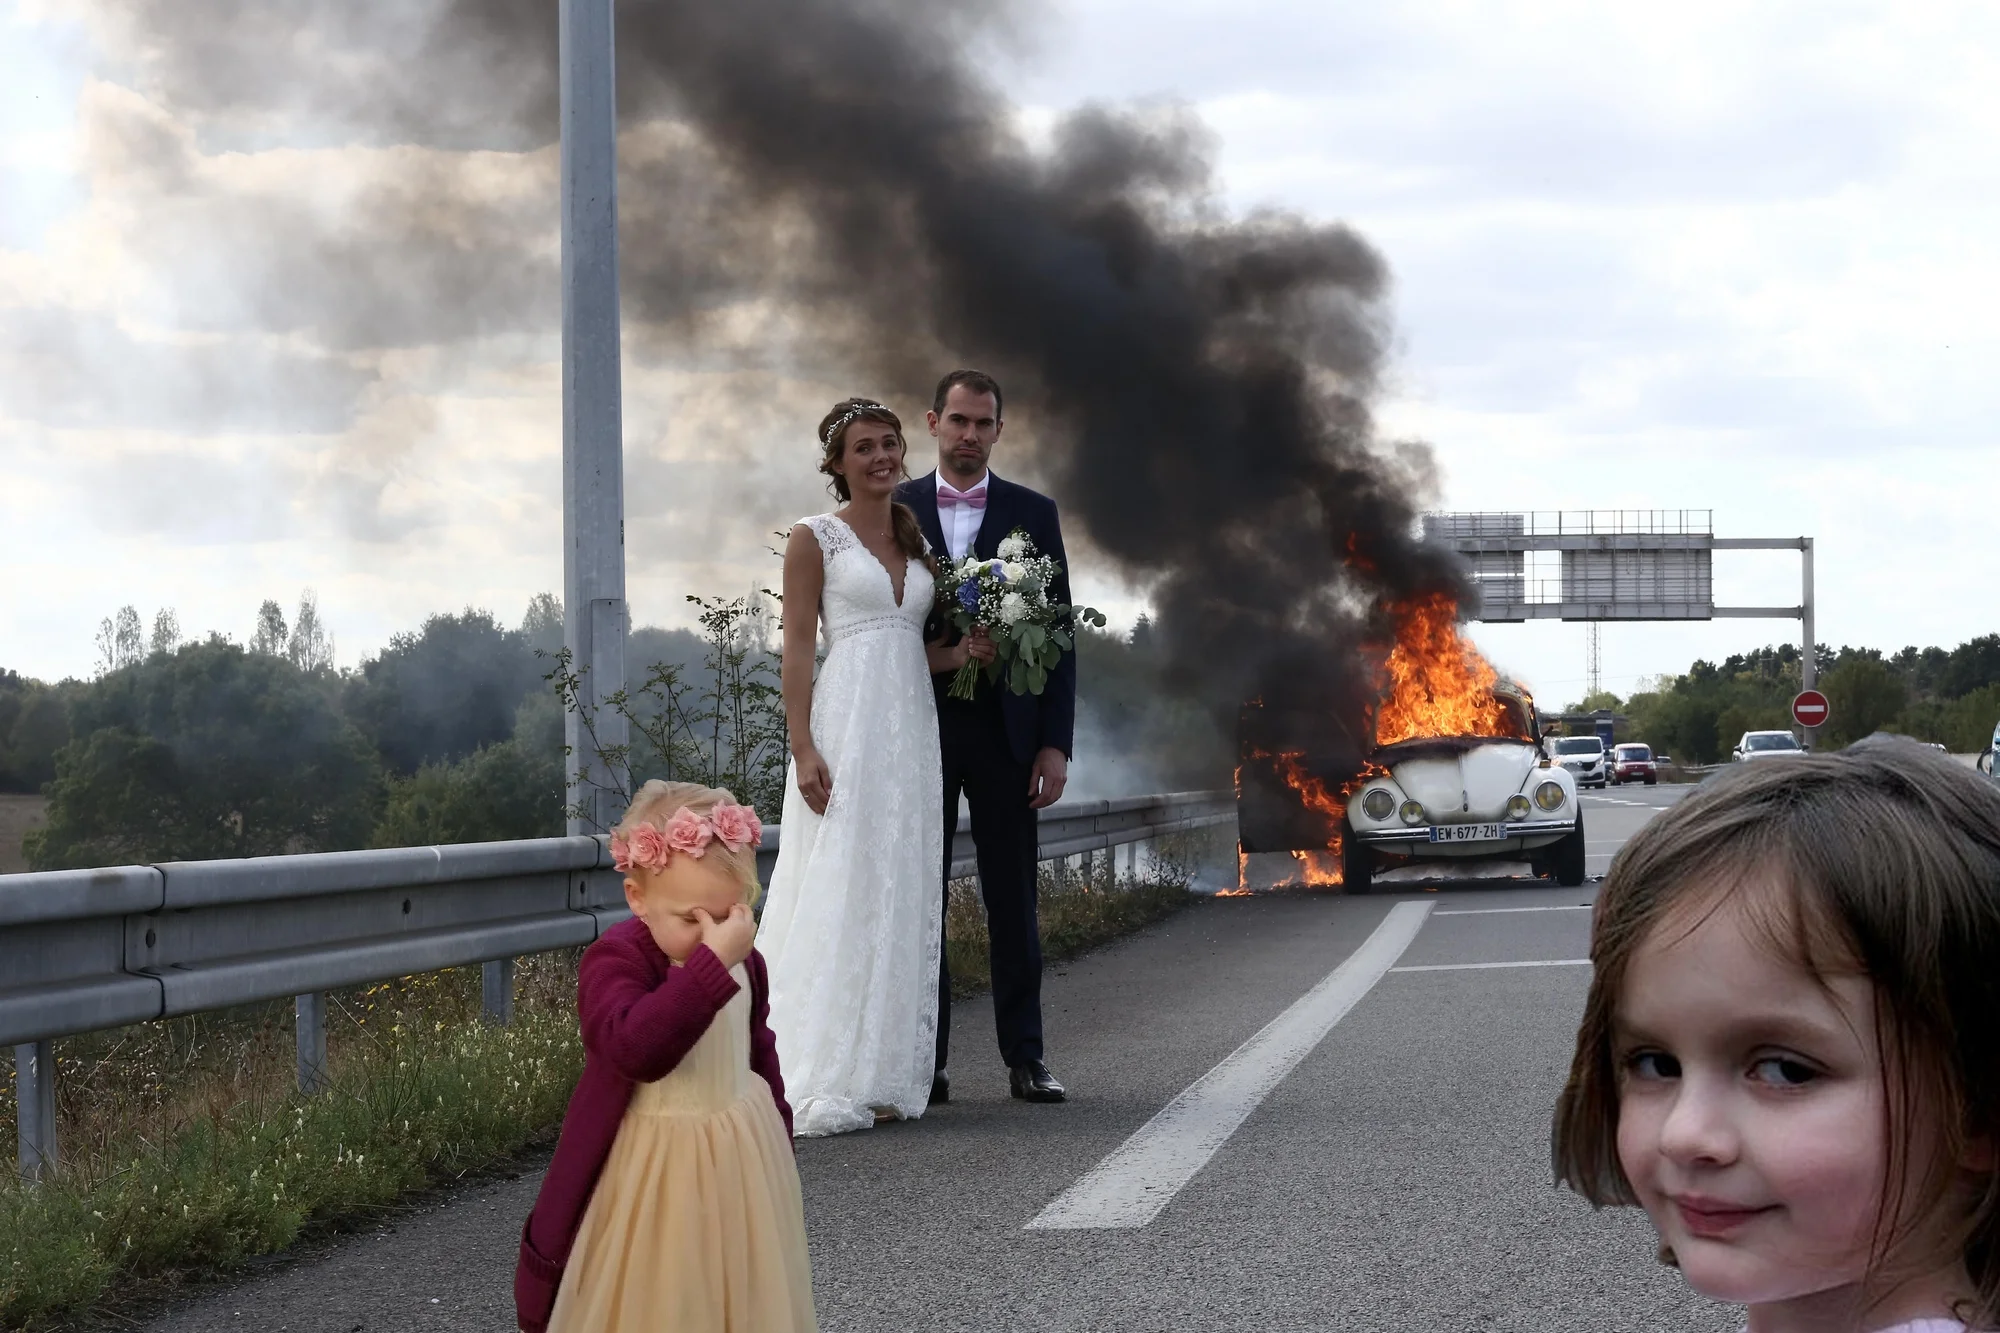 Молодята зробили весільне фото на фоні палаючого авто і стали жертвами фотошопу - фото 452773